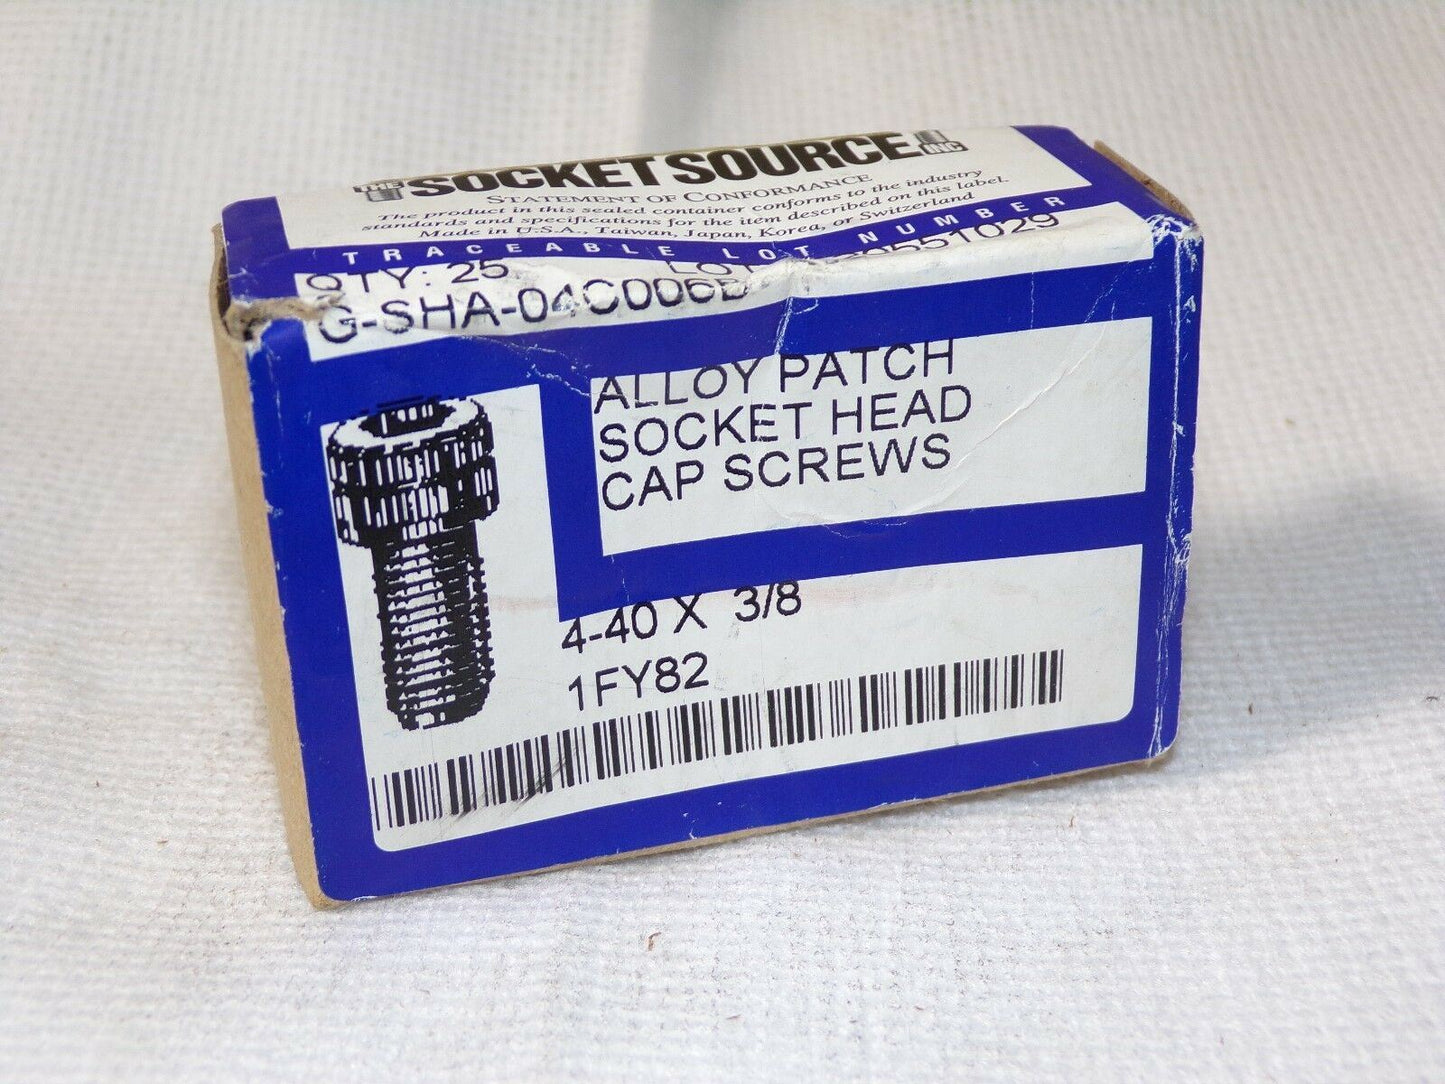 4-40 X 3/8" Alloy Patch Socket Head Cap Screws 1FY82 QTY-25 (183321785761-2F23 (E))